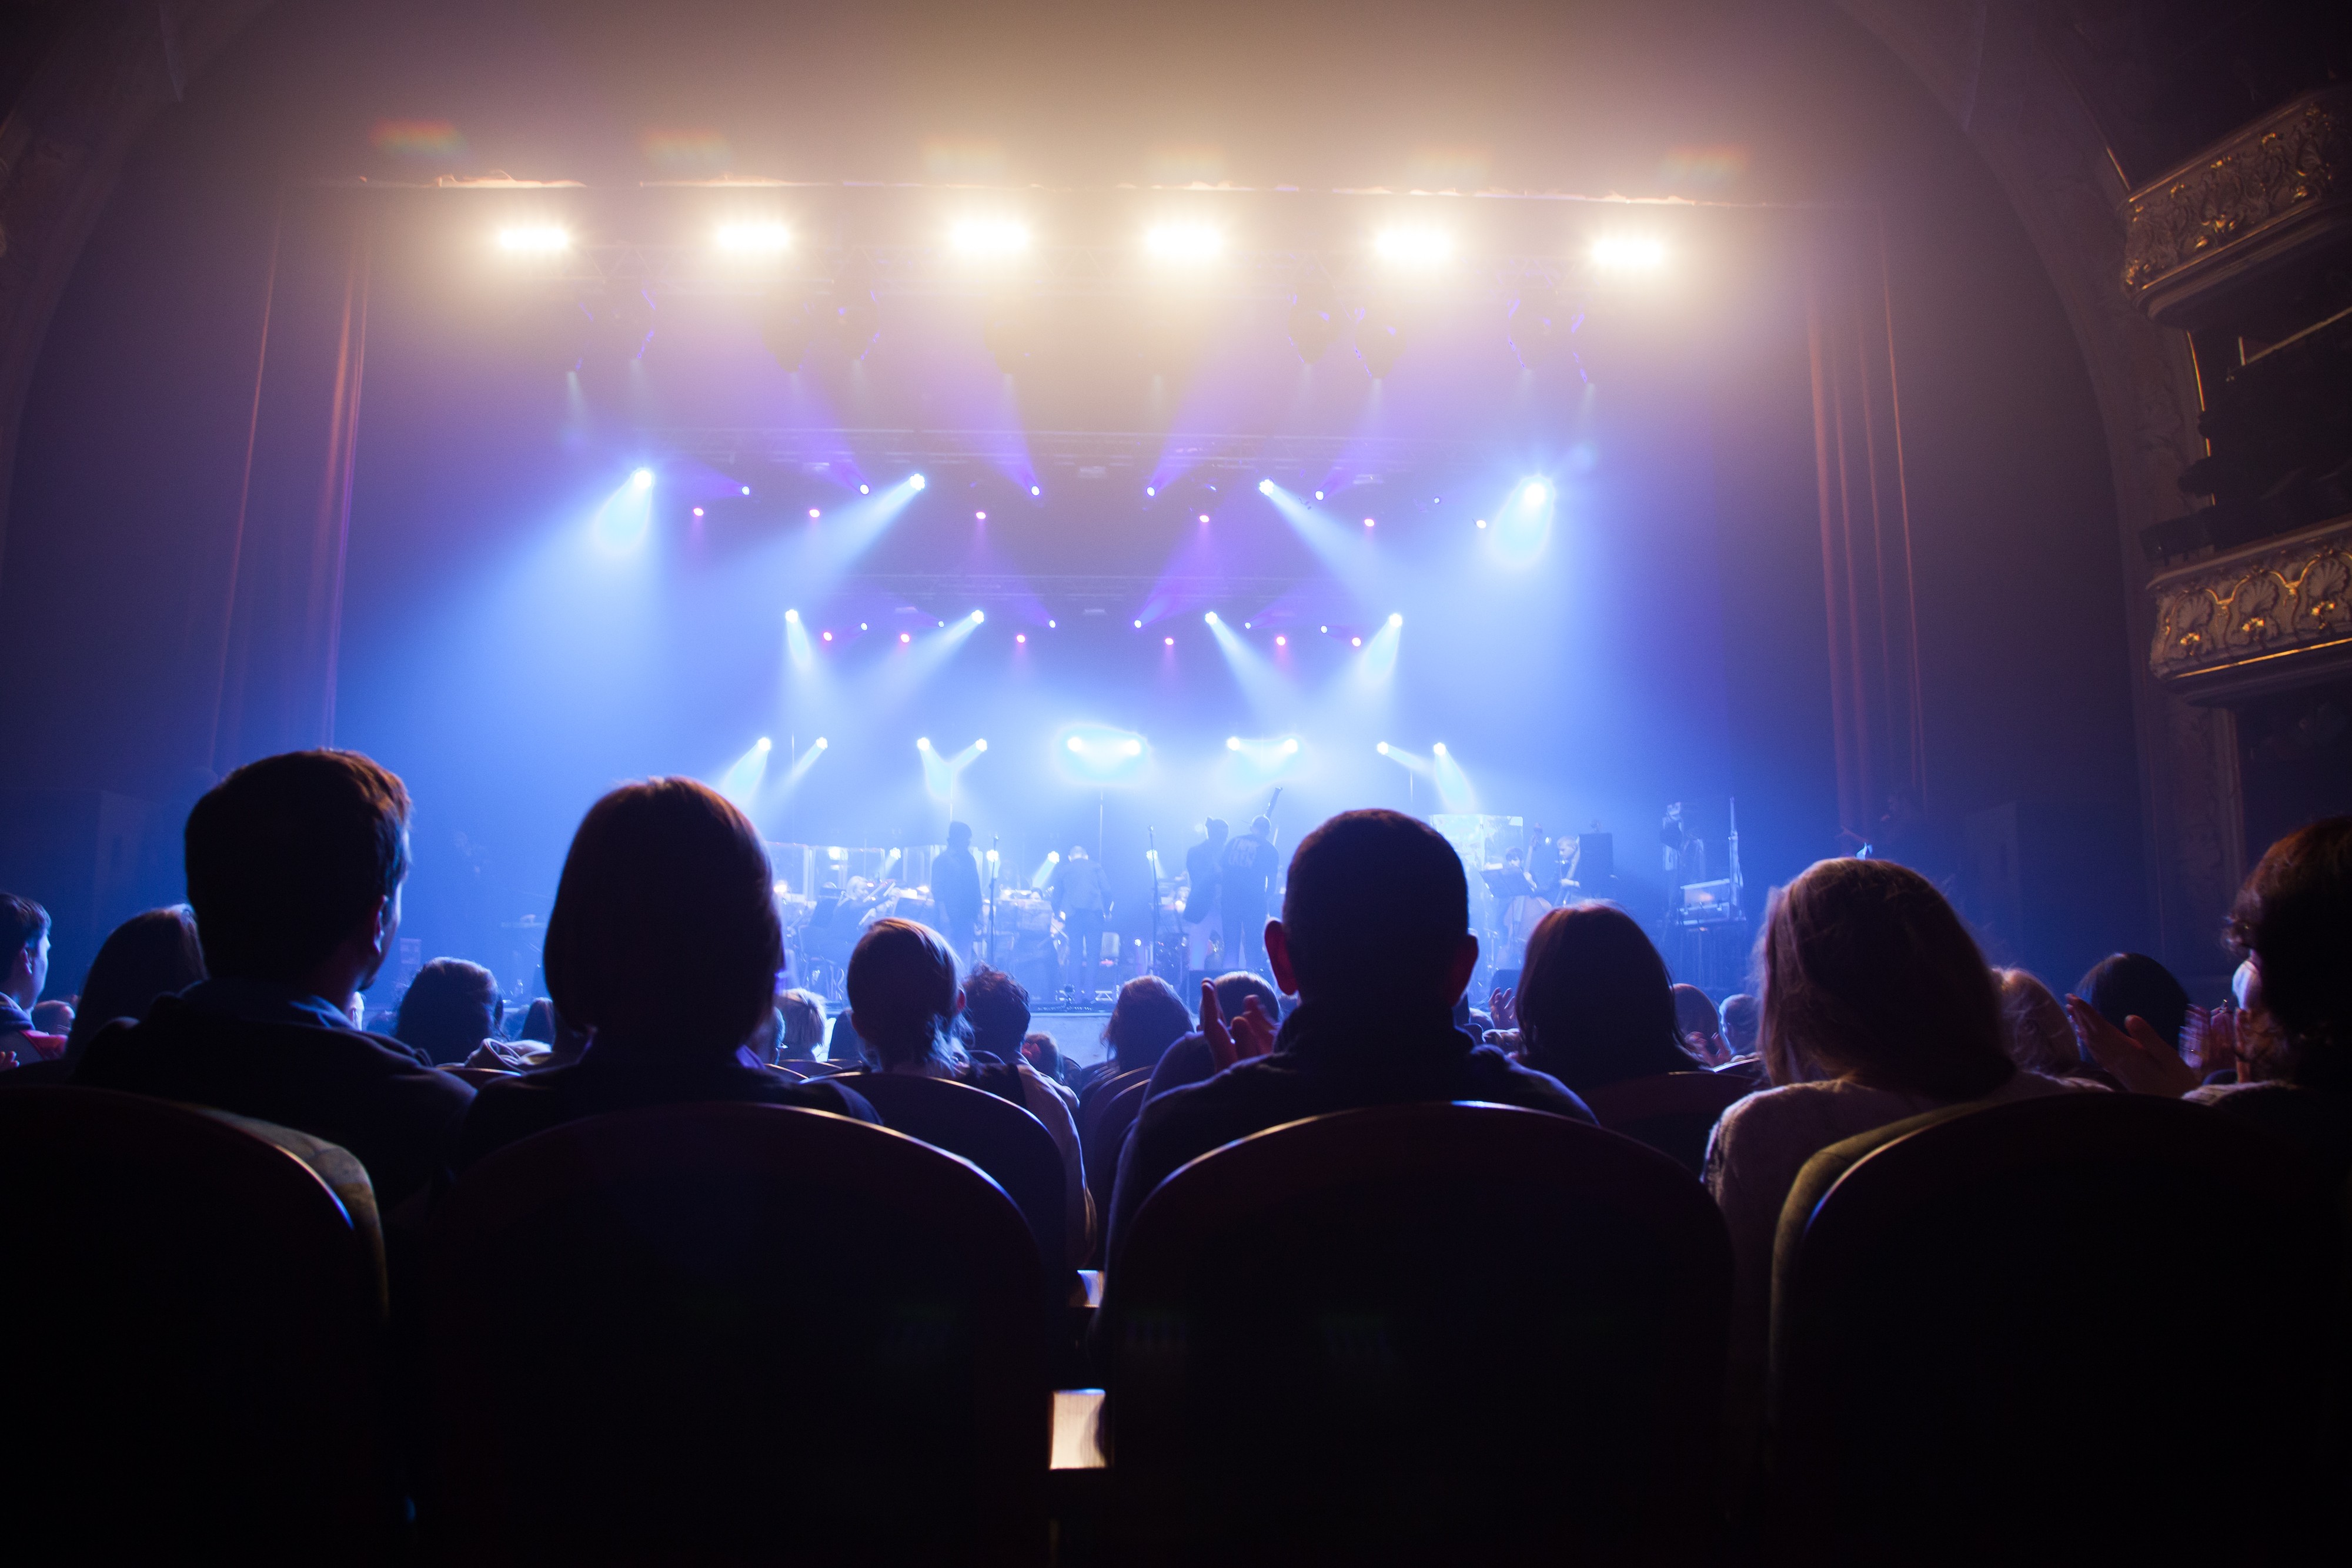 Theatre audience. Концертный зал с людьми. Зал со сценой. Сцена со зрителями. Вид со сцены.